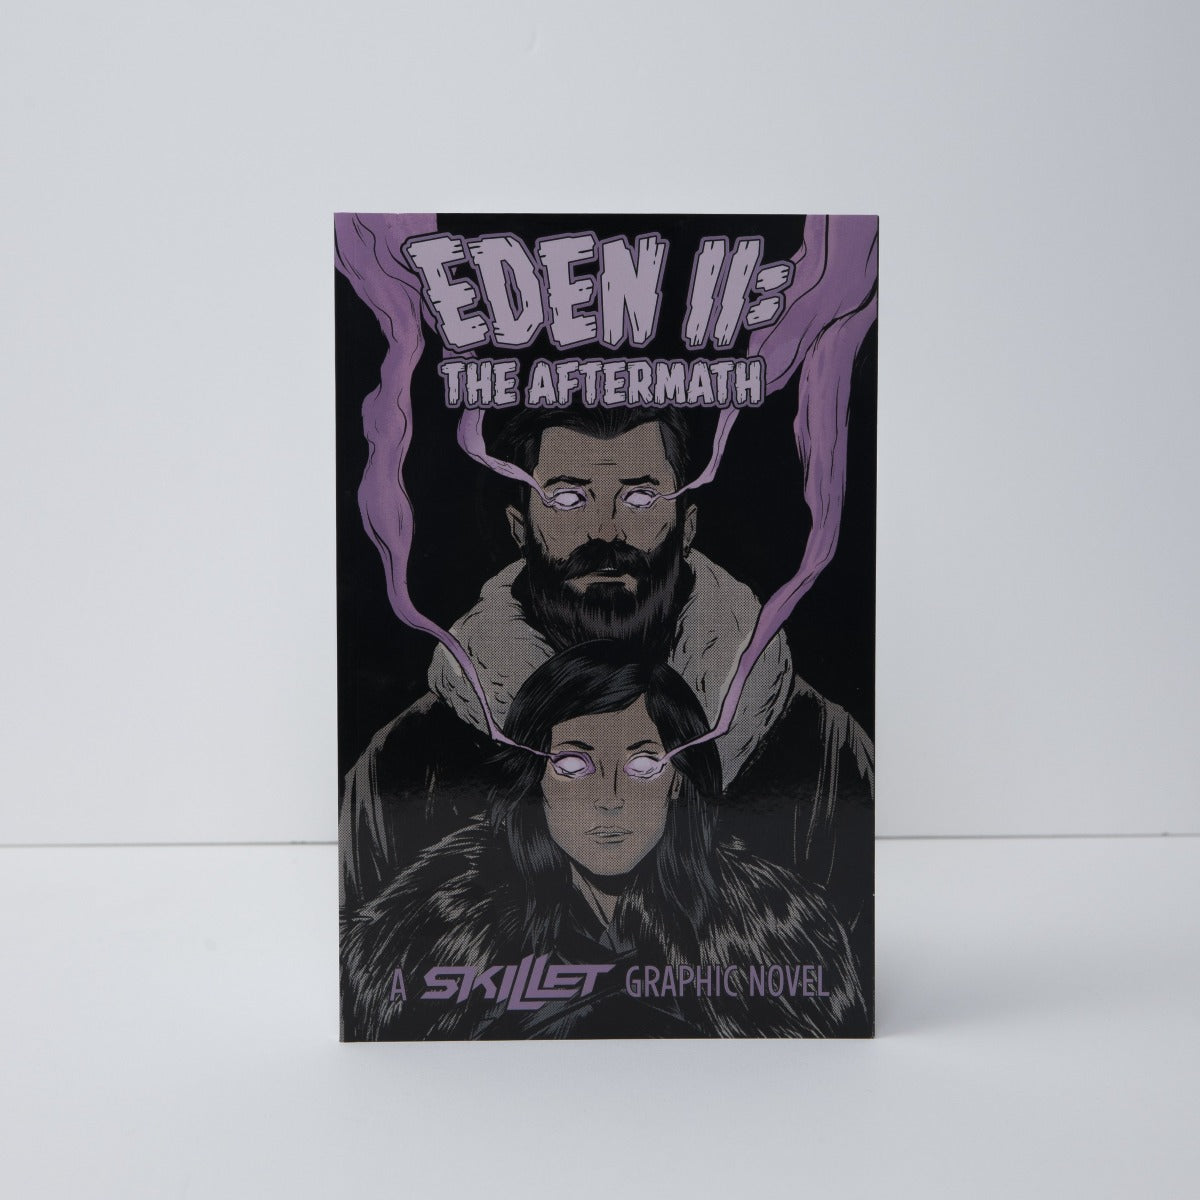 Skillet - Eden II: The Aftermath (4992342360204)